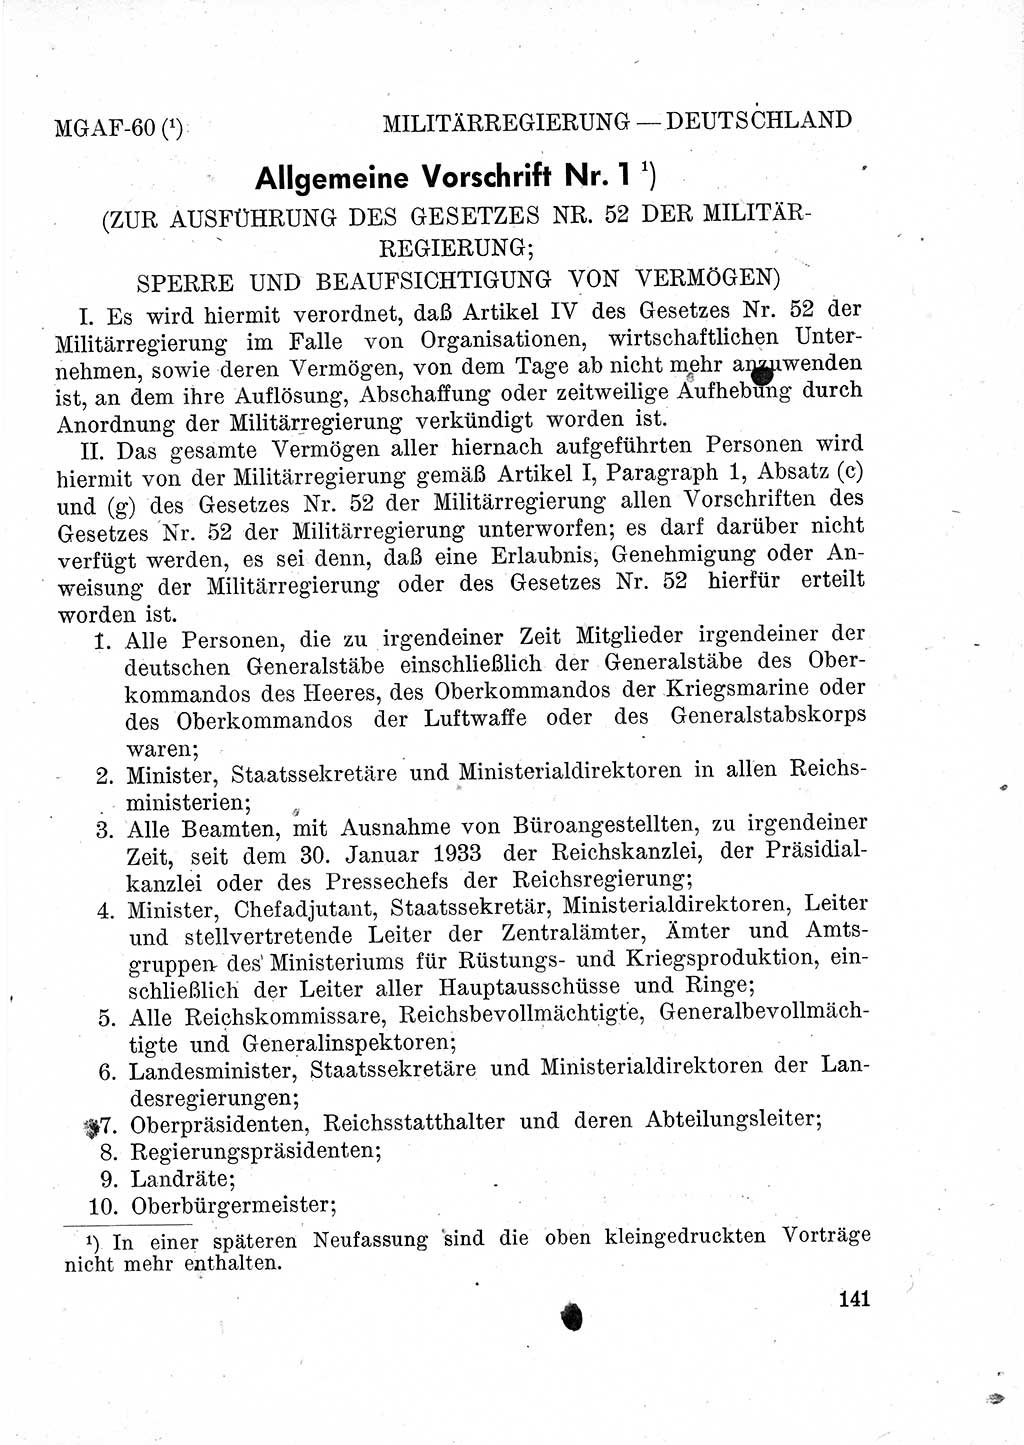 Das Recht der Besatzungsmacht (Deutschland), Proklamationen, Deklerationen, Verordnungen, Gesetze und Bekanntmachungen 1947, Seite 141 (R. Bes. Dtl. 1947, S. 141)